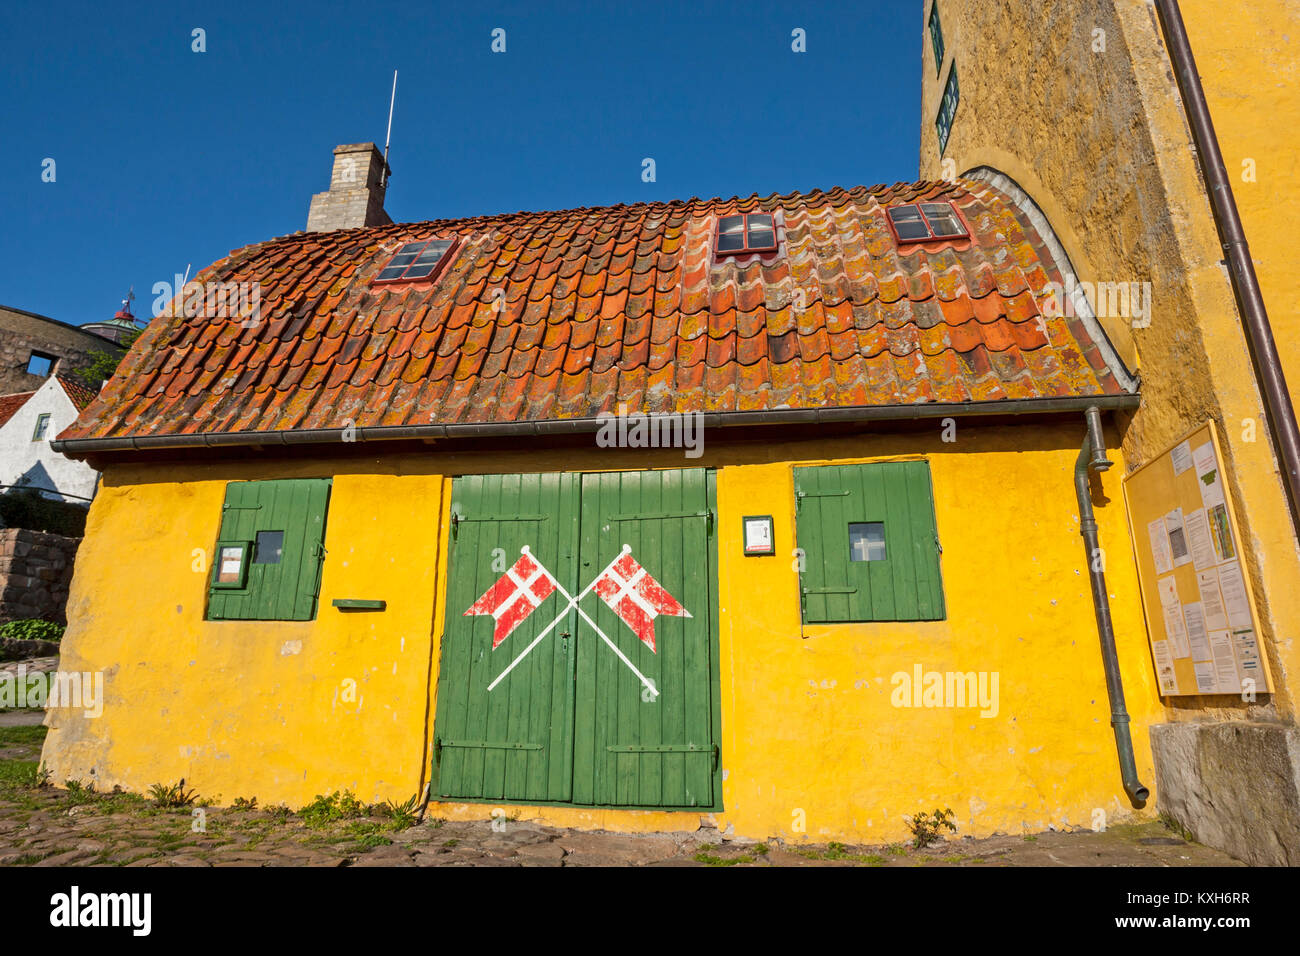 Cancello verde, bandiere danese, curvo tetto con tegole rosse sul Bohlendachhuset, Christiansø, Ertholmene, Bornholm, Danimarca Foto Stock